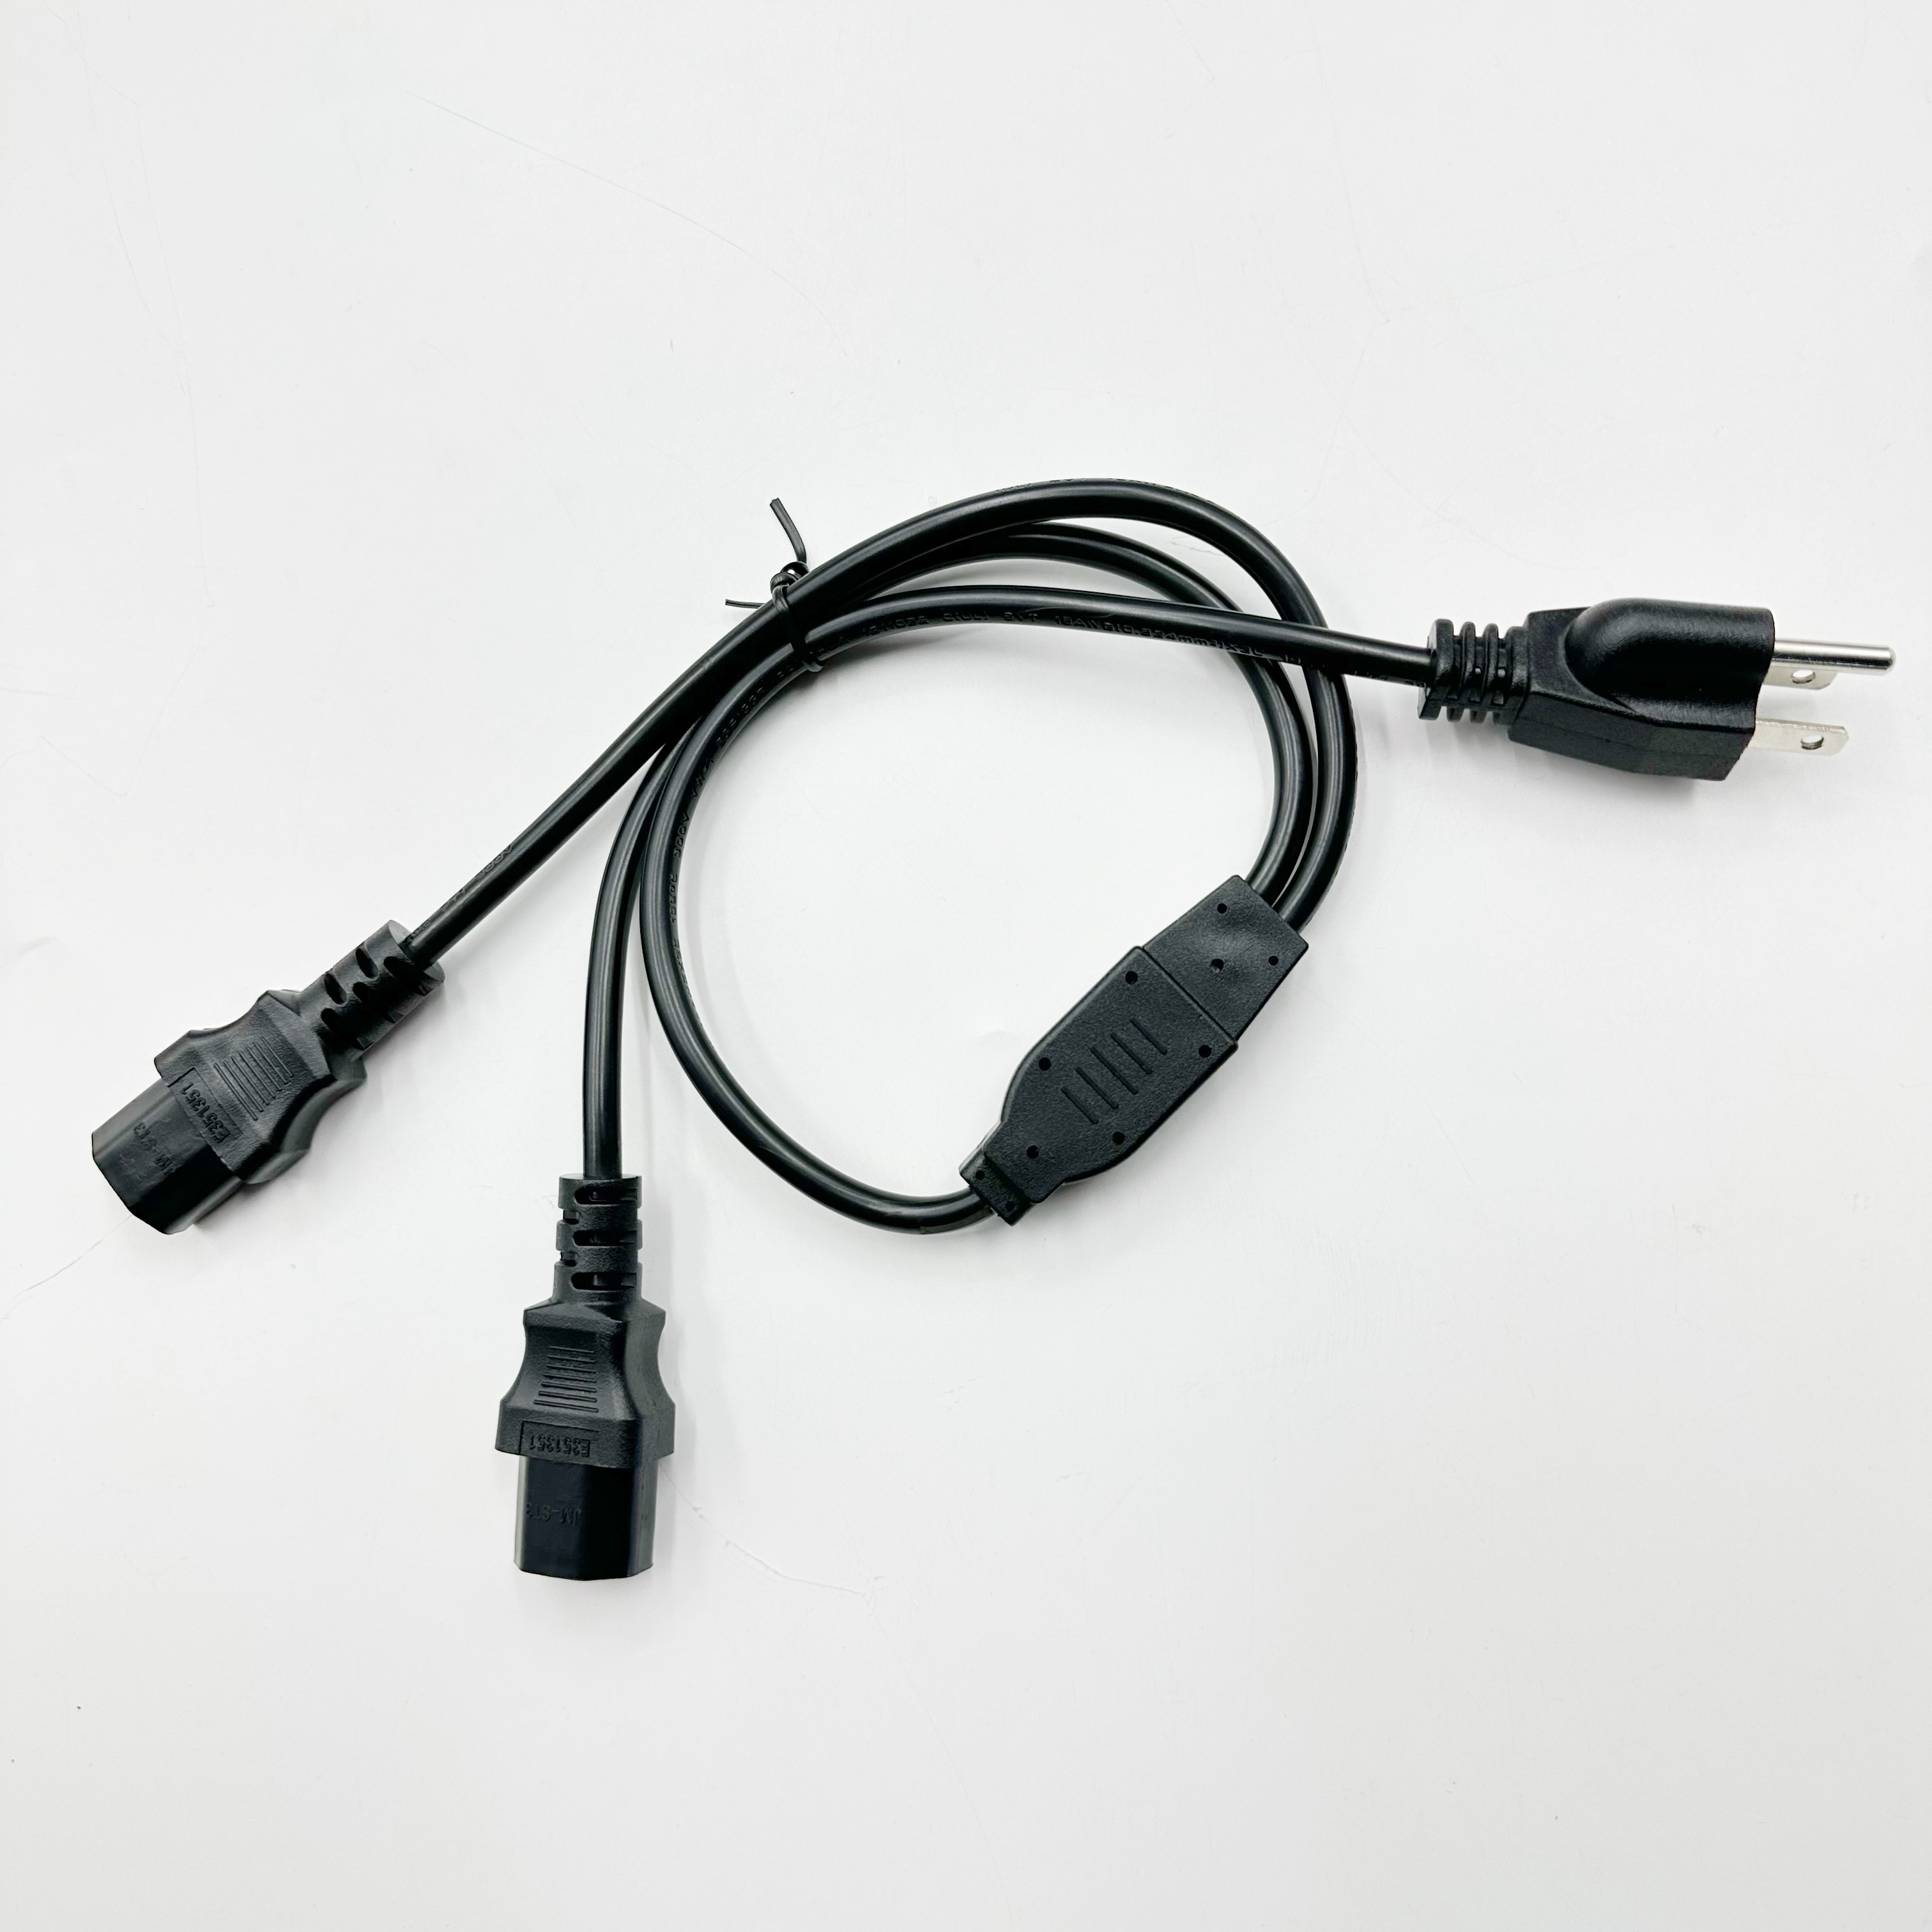 Cable Alimentacion 2 Metros (Cpu Monitor) - Cables de corriente